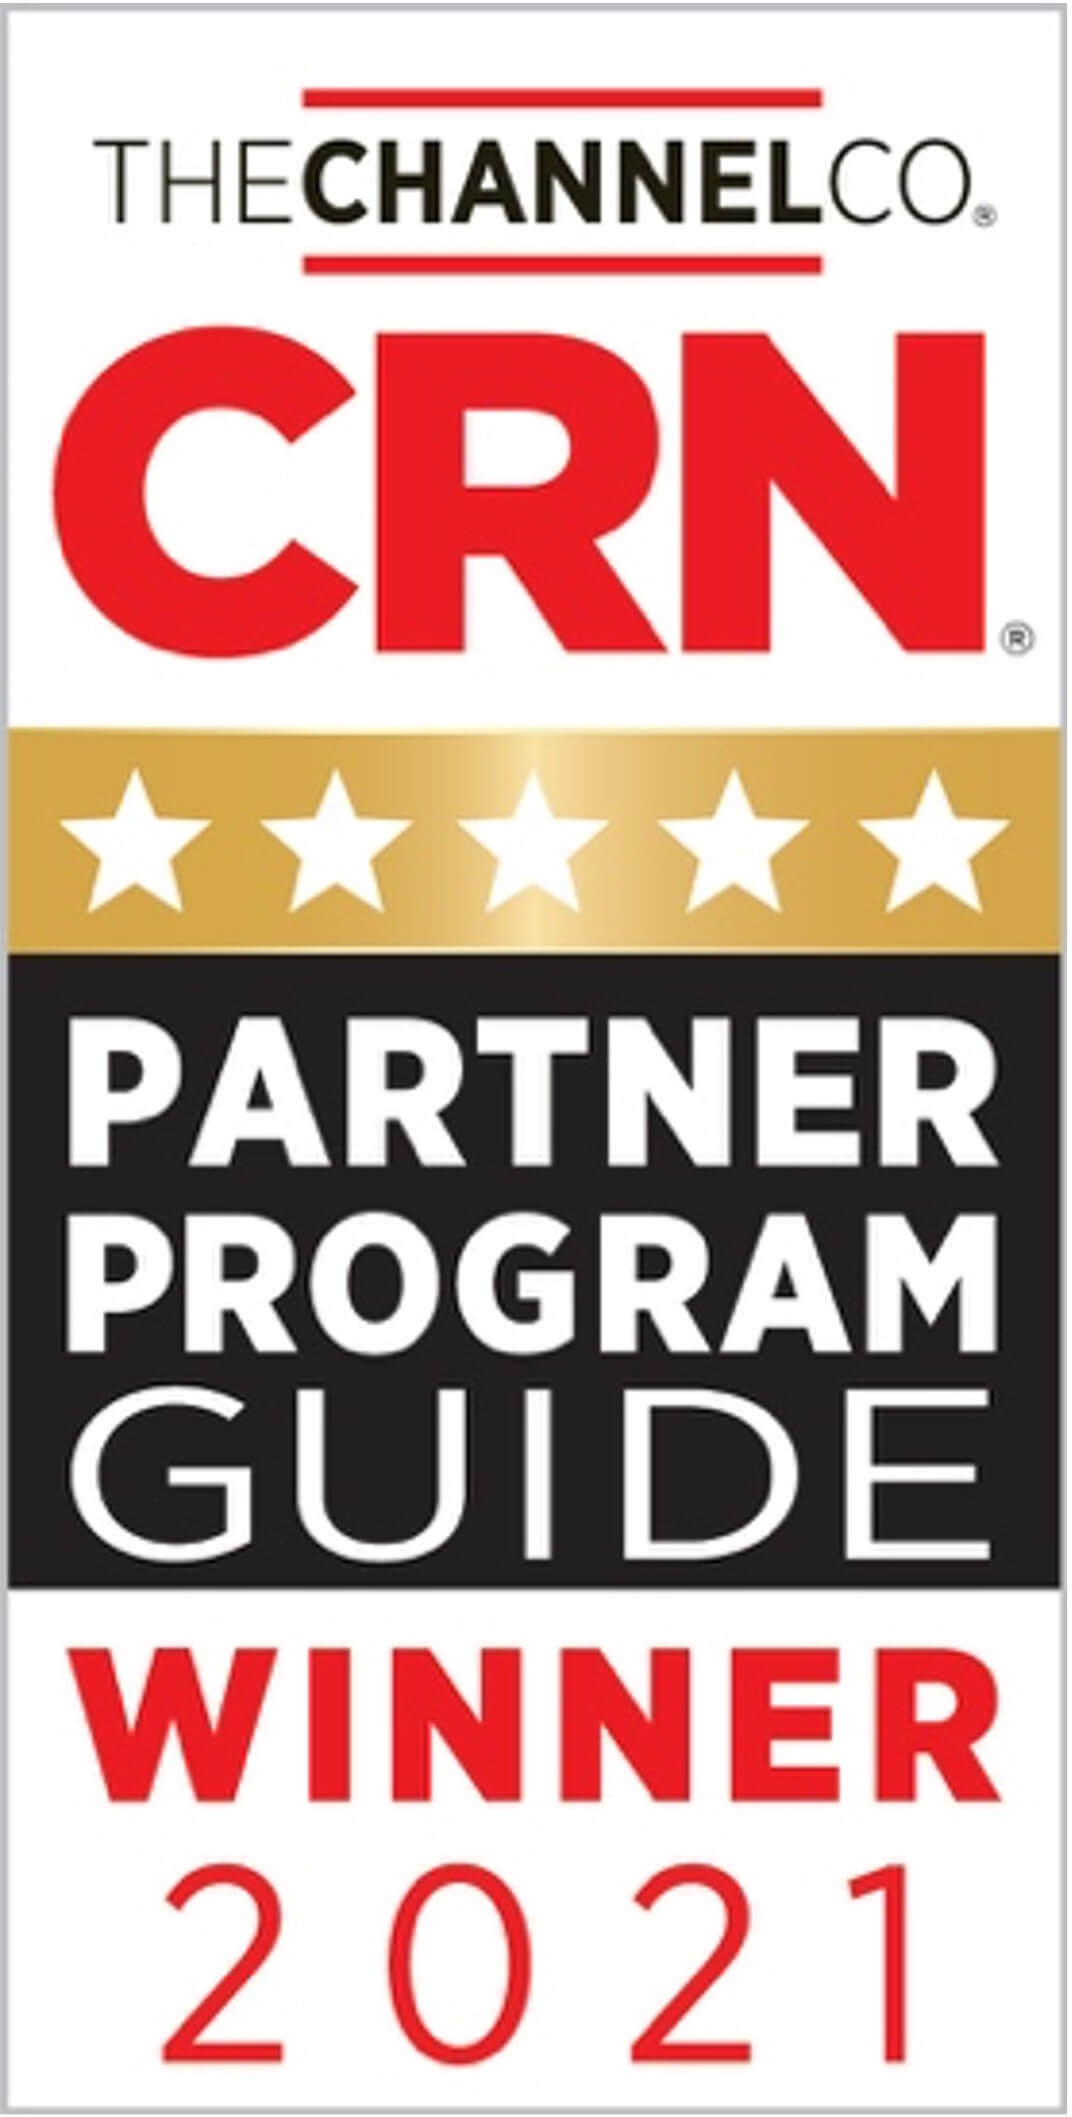 Intermedia Partner Program Again Awarded 5 Stars from CRN